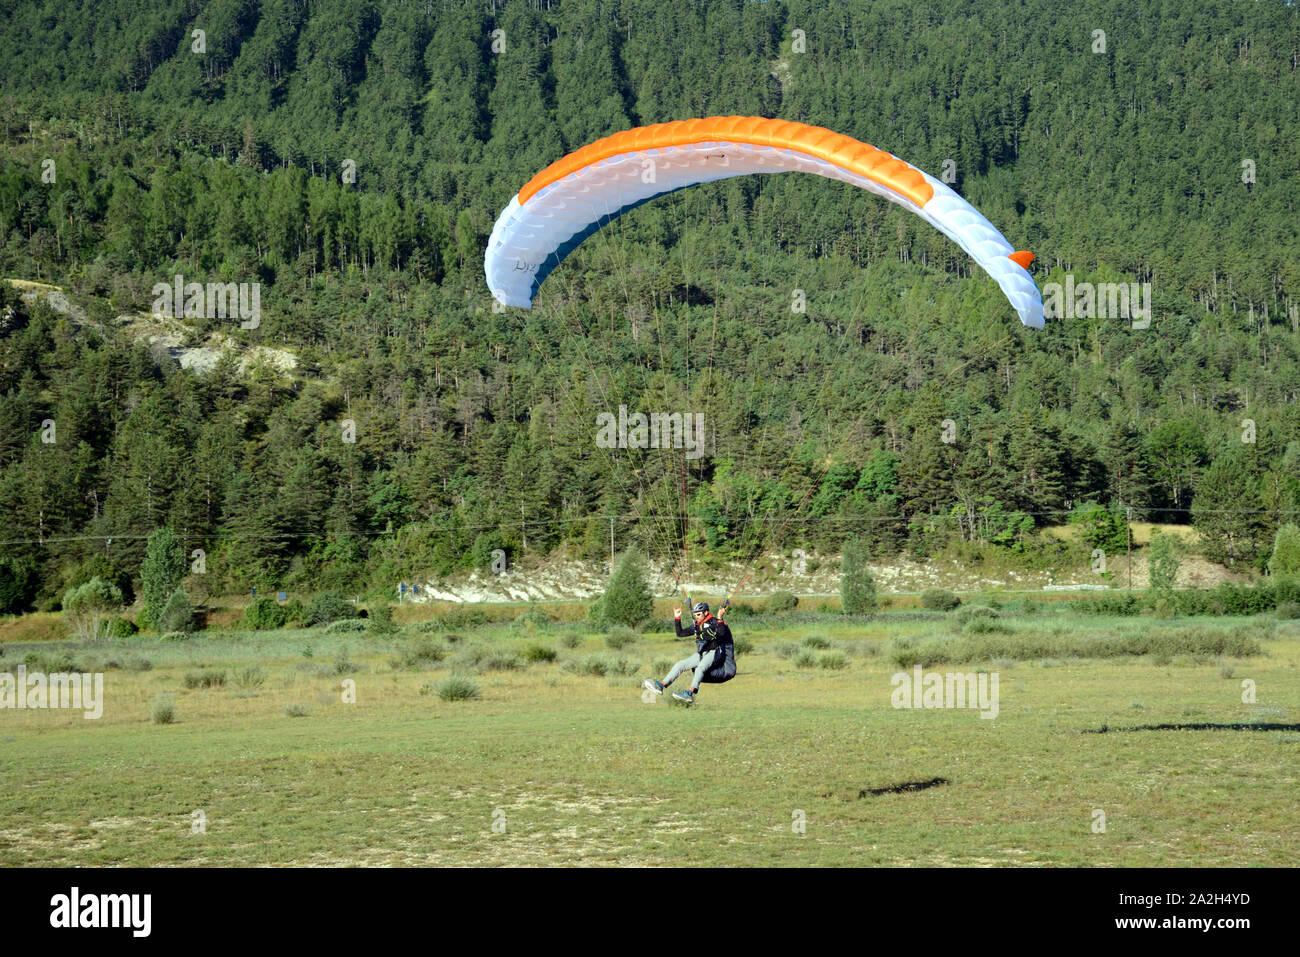 Hang Glider Landing at Saint-André-les-Alpes in the Verdon Regional Park Alpes-de-Haute-Provence Provence france Stock Photo